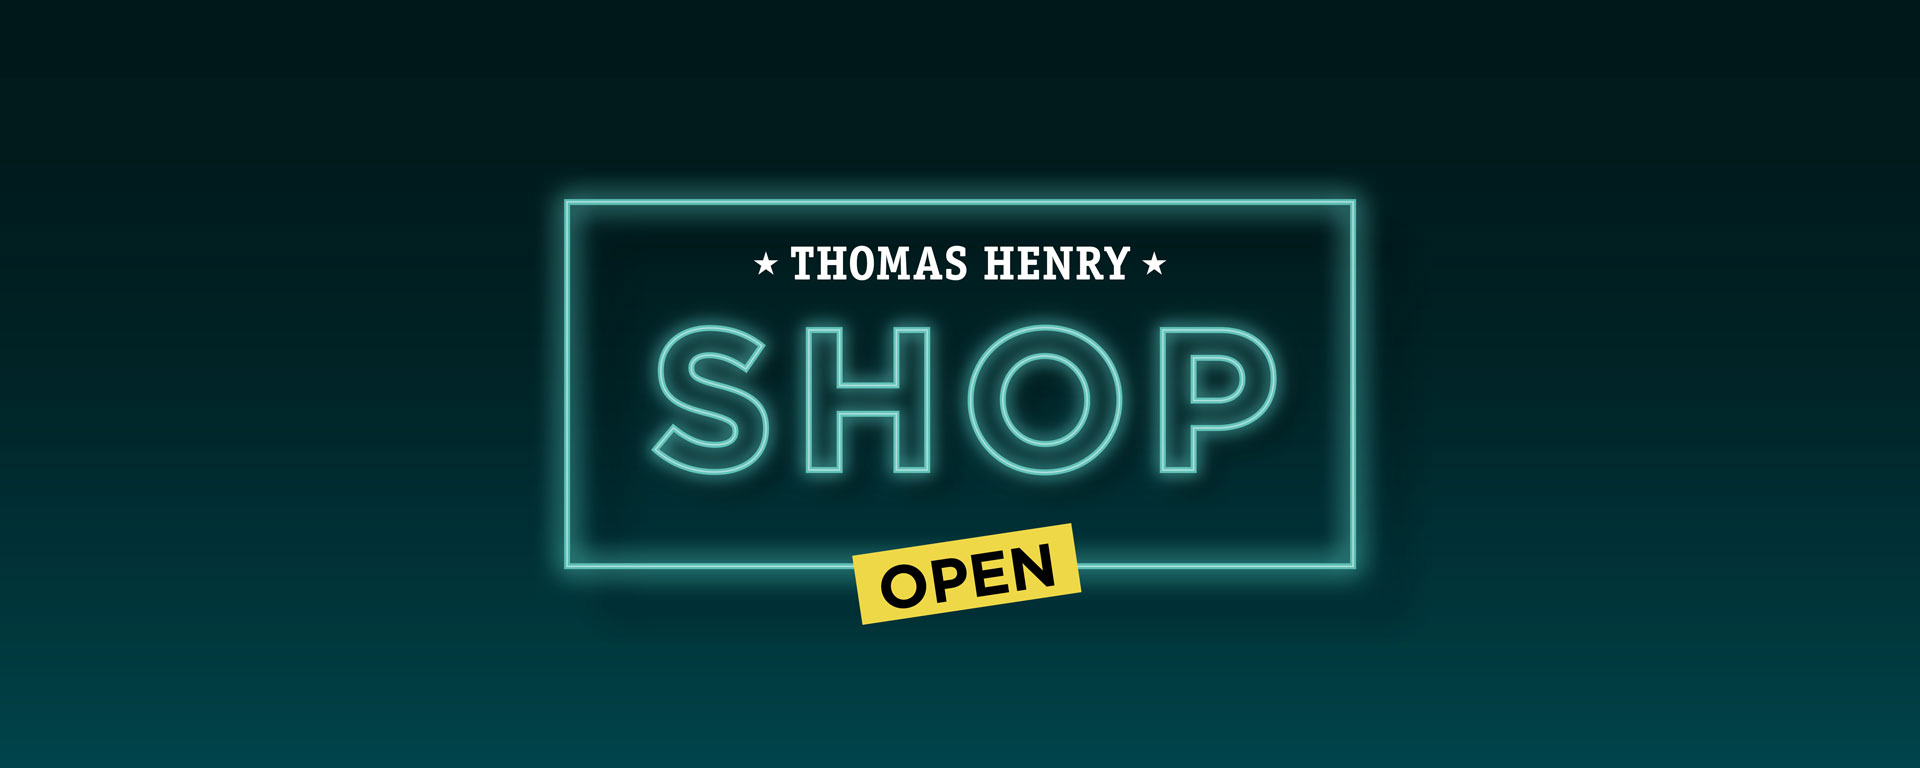 Thomas Henry Background Image